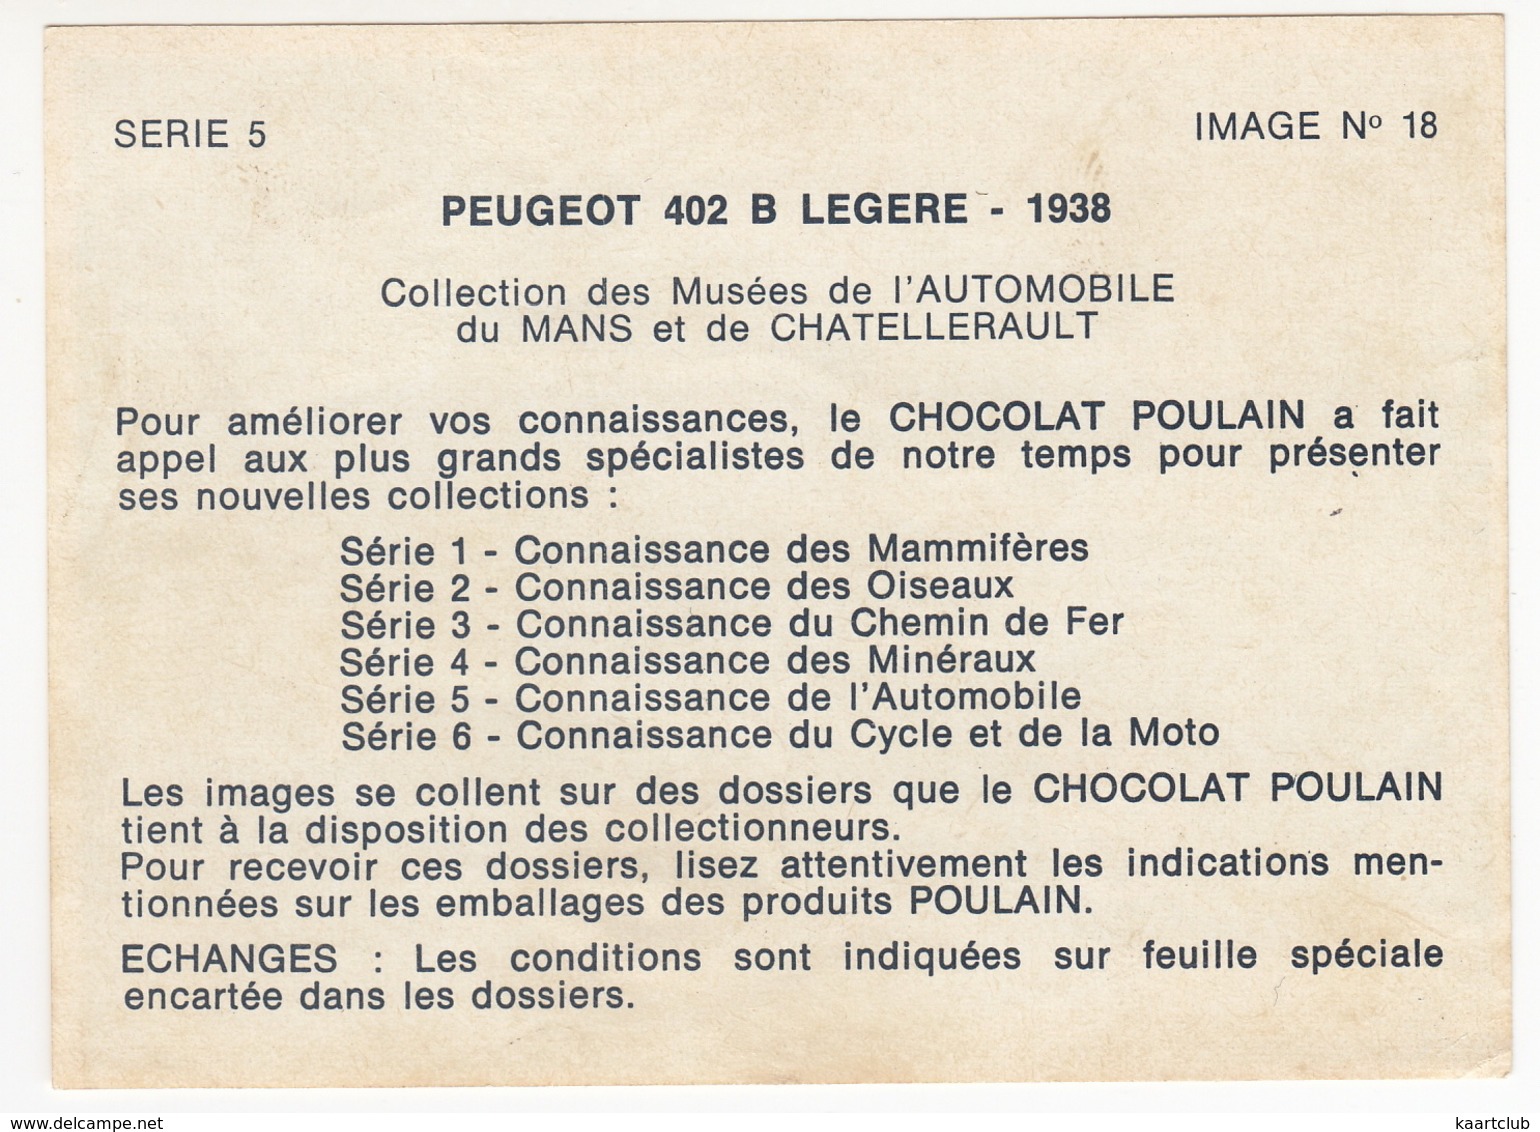 PEUGEOT 402 B LEGERE - 1938 - Serie 5 Image No 18 - CHOCOLAT POULAIN - Poulain